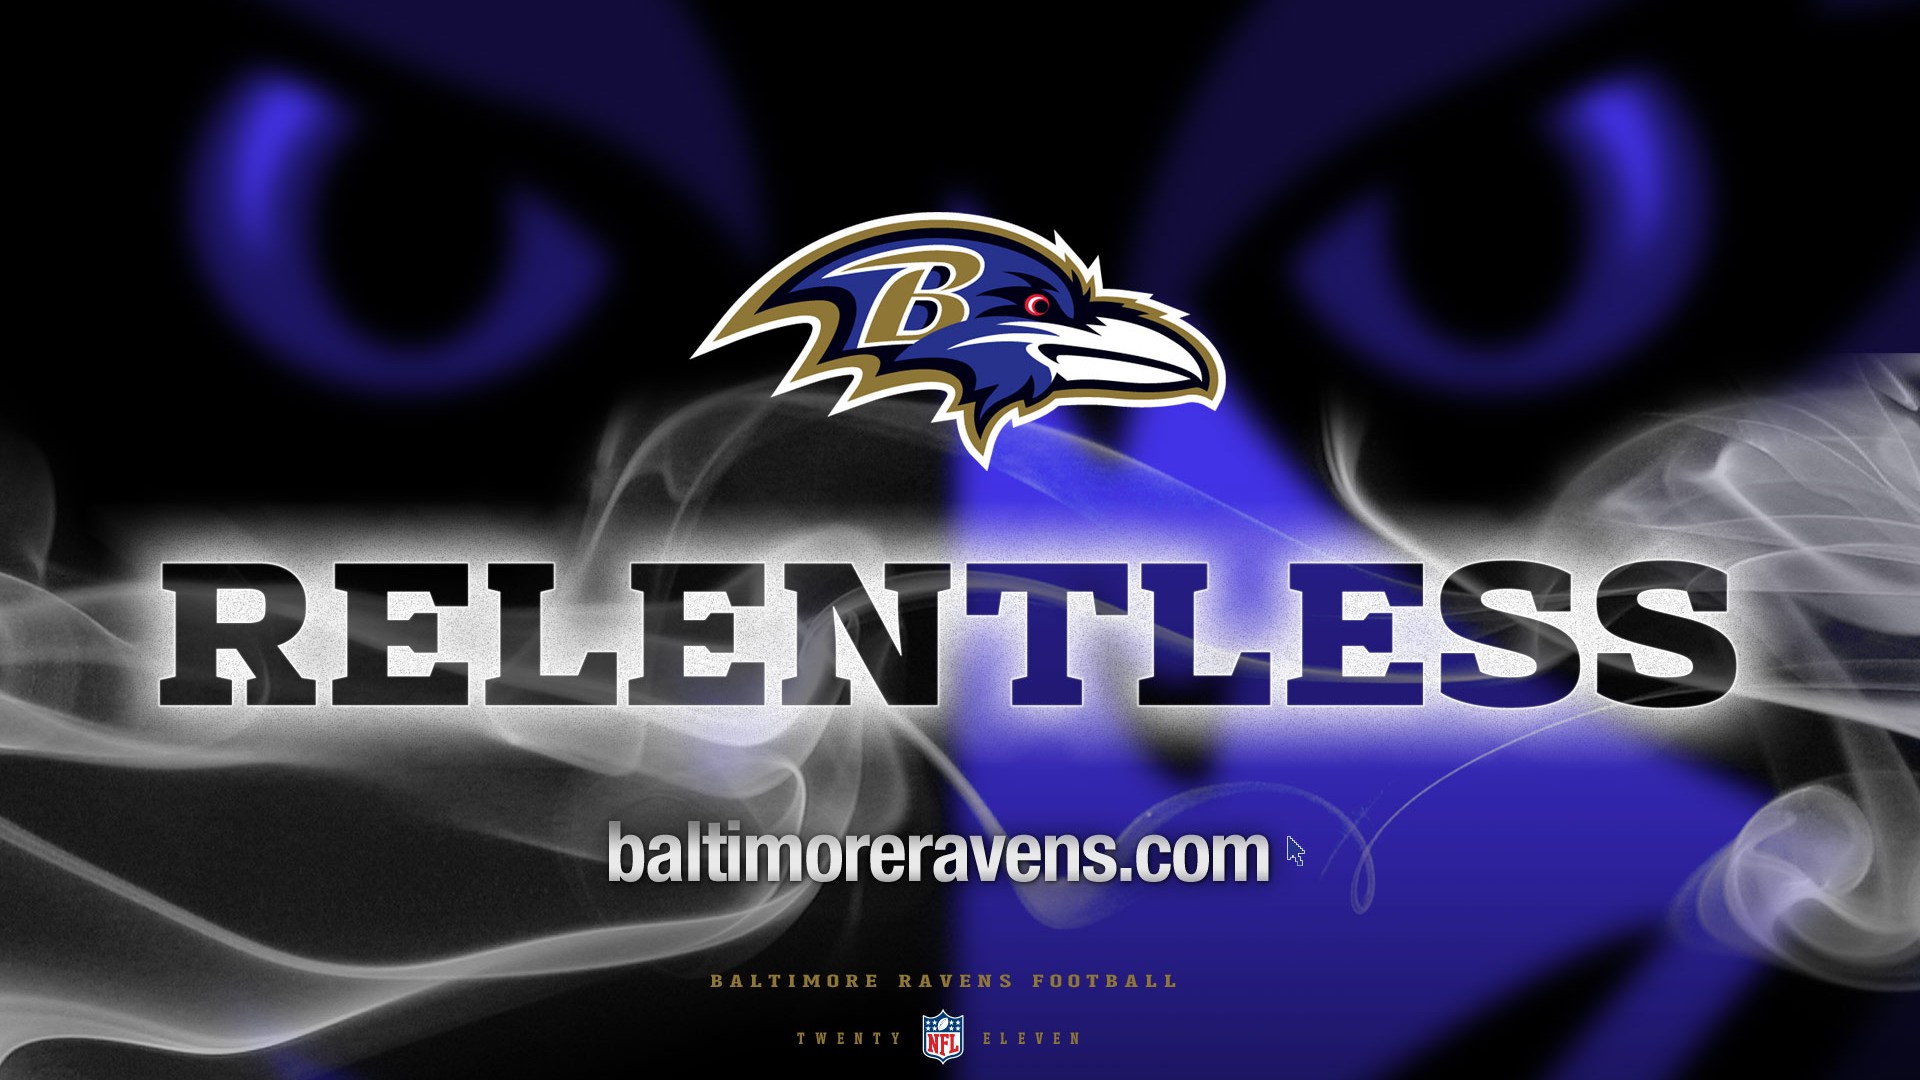 HD Desktop Wallpaper Baltimore Ravens 1920x1080